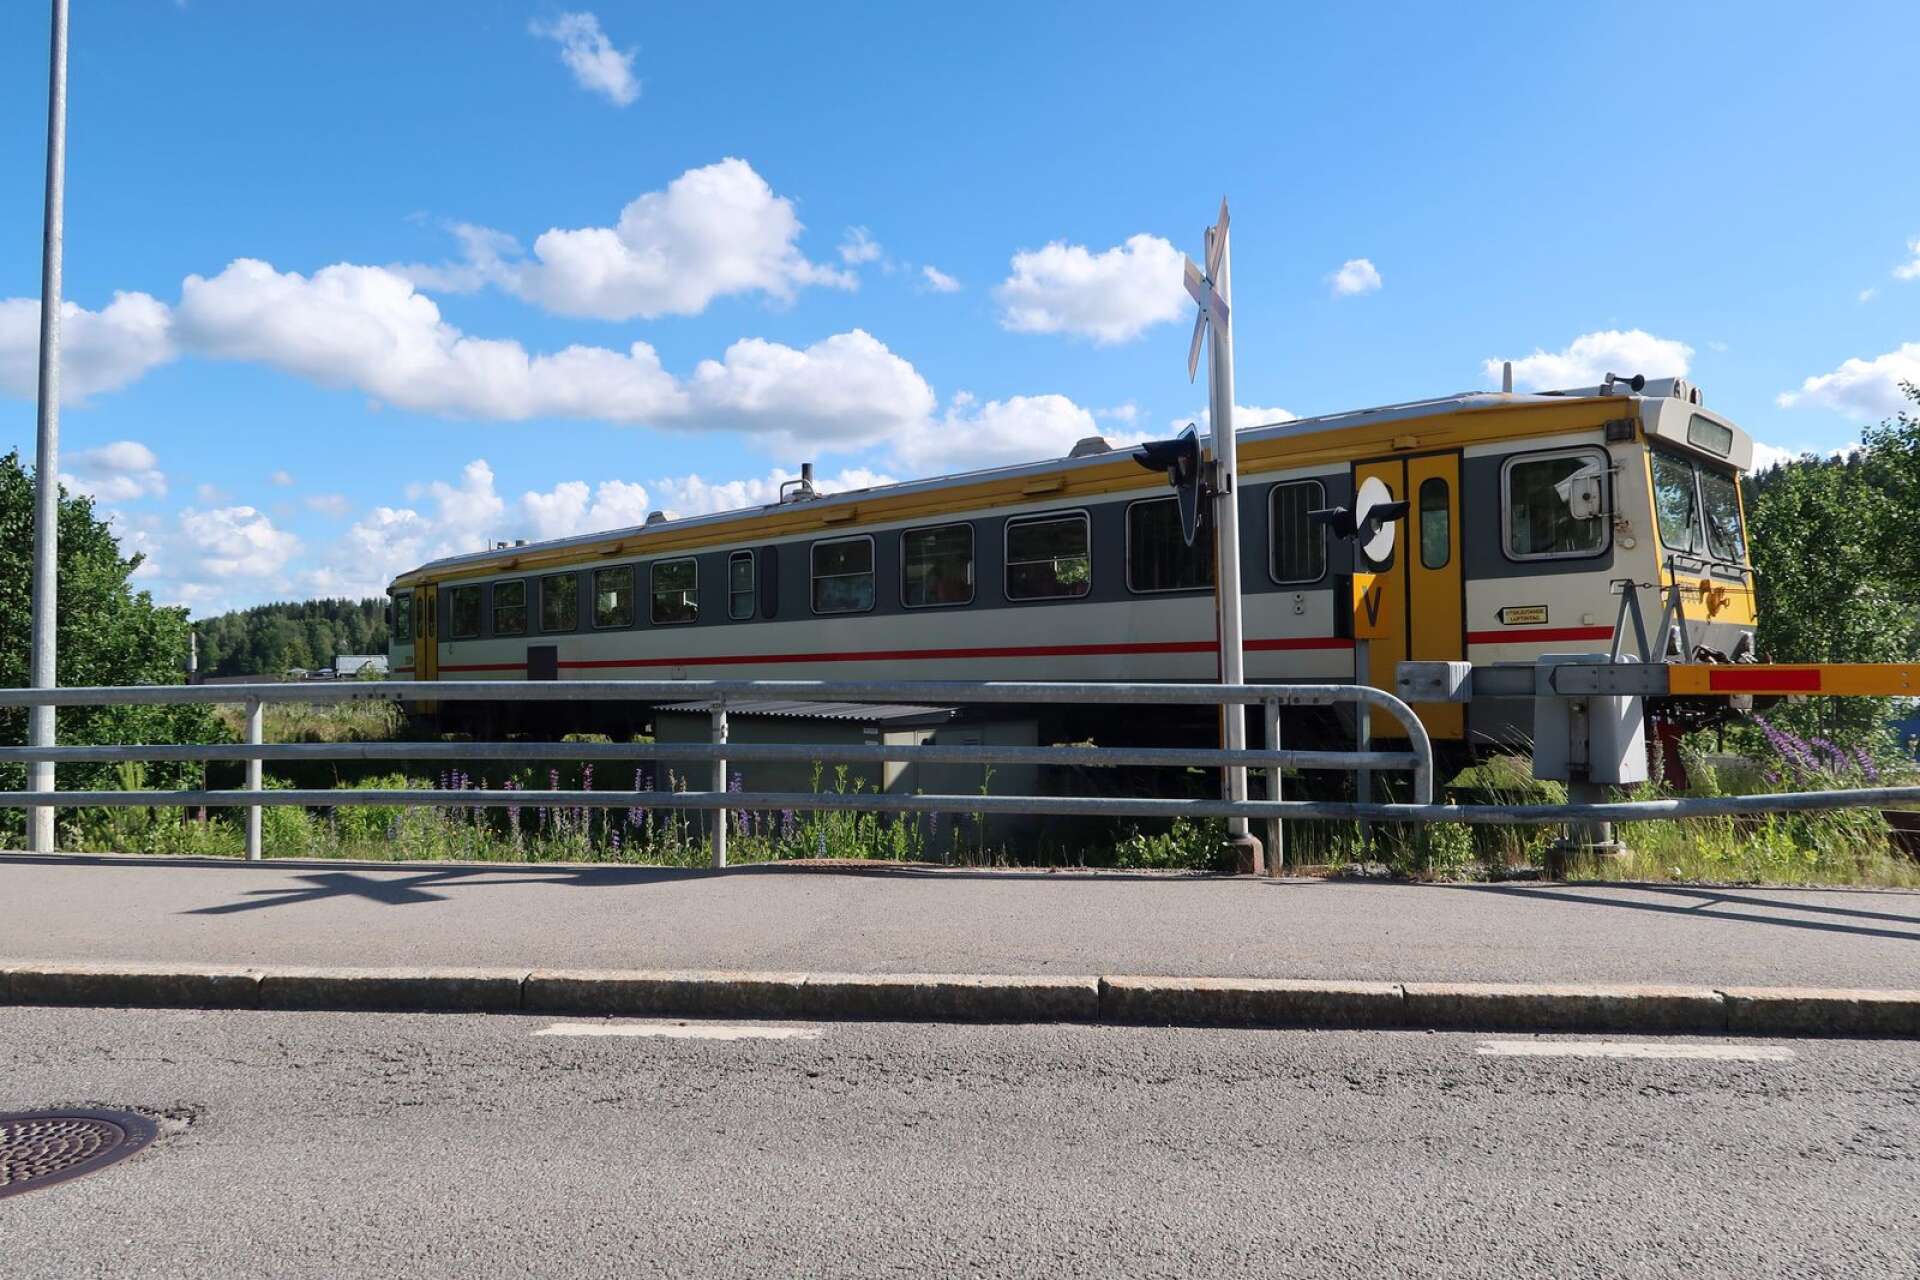 I dag, måndag, startar DVVJ sommarens turisttrafik med rälsbuss mellan Bengtsfors och Mellerud.